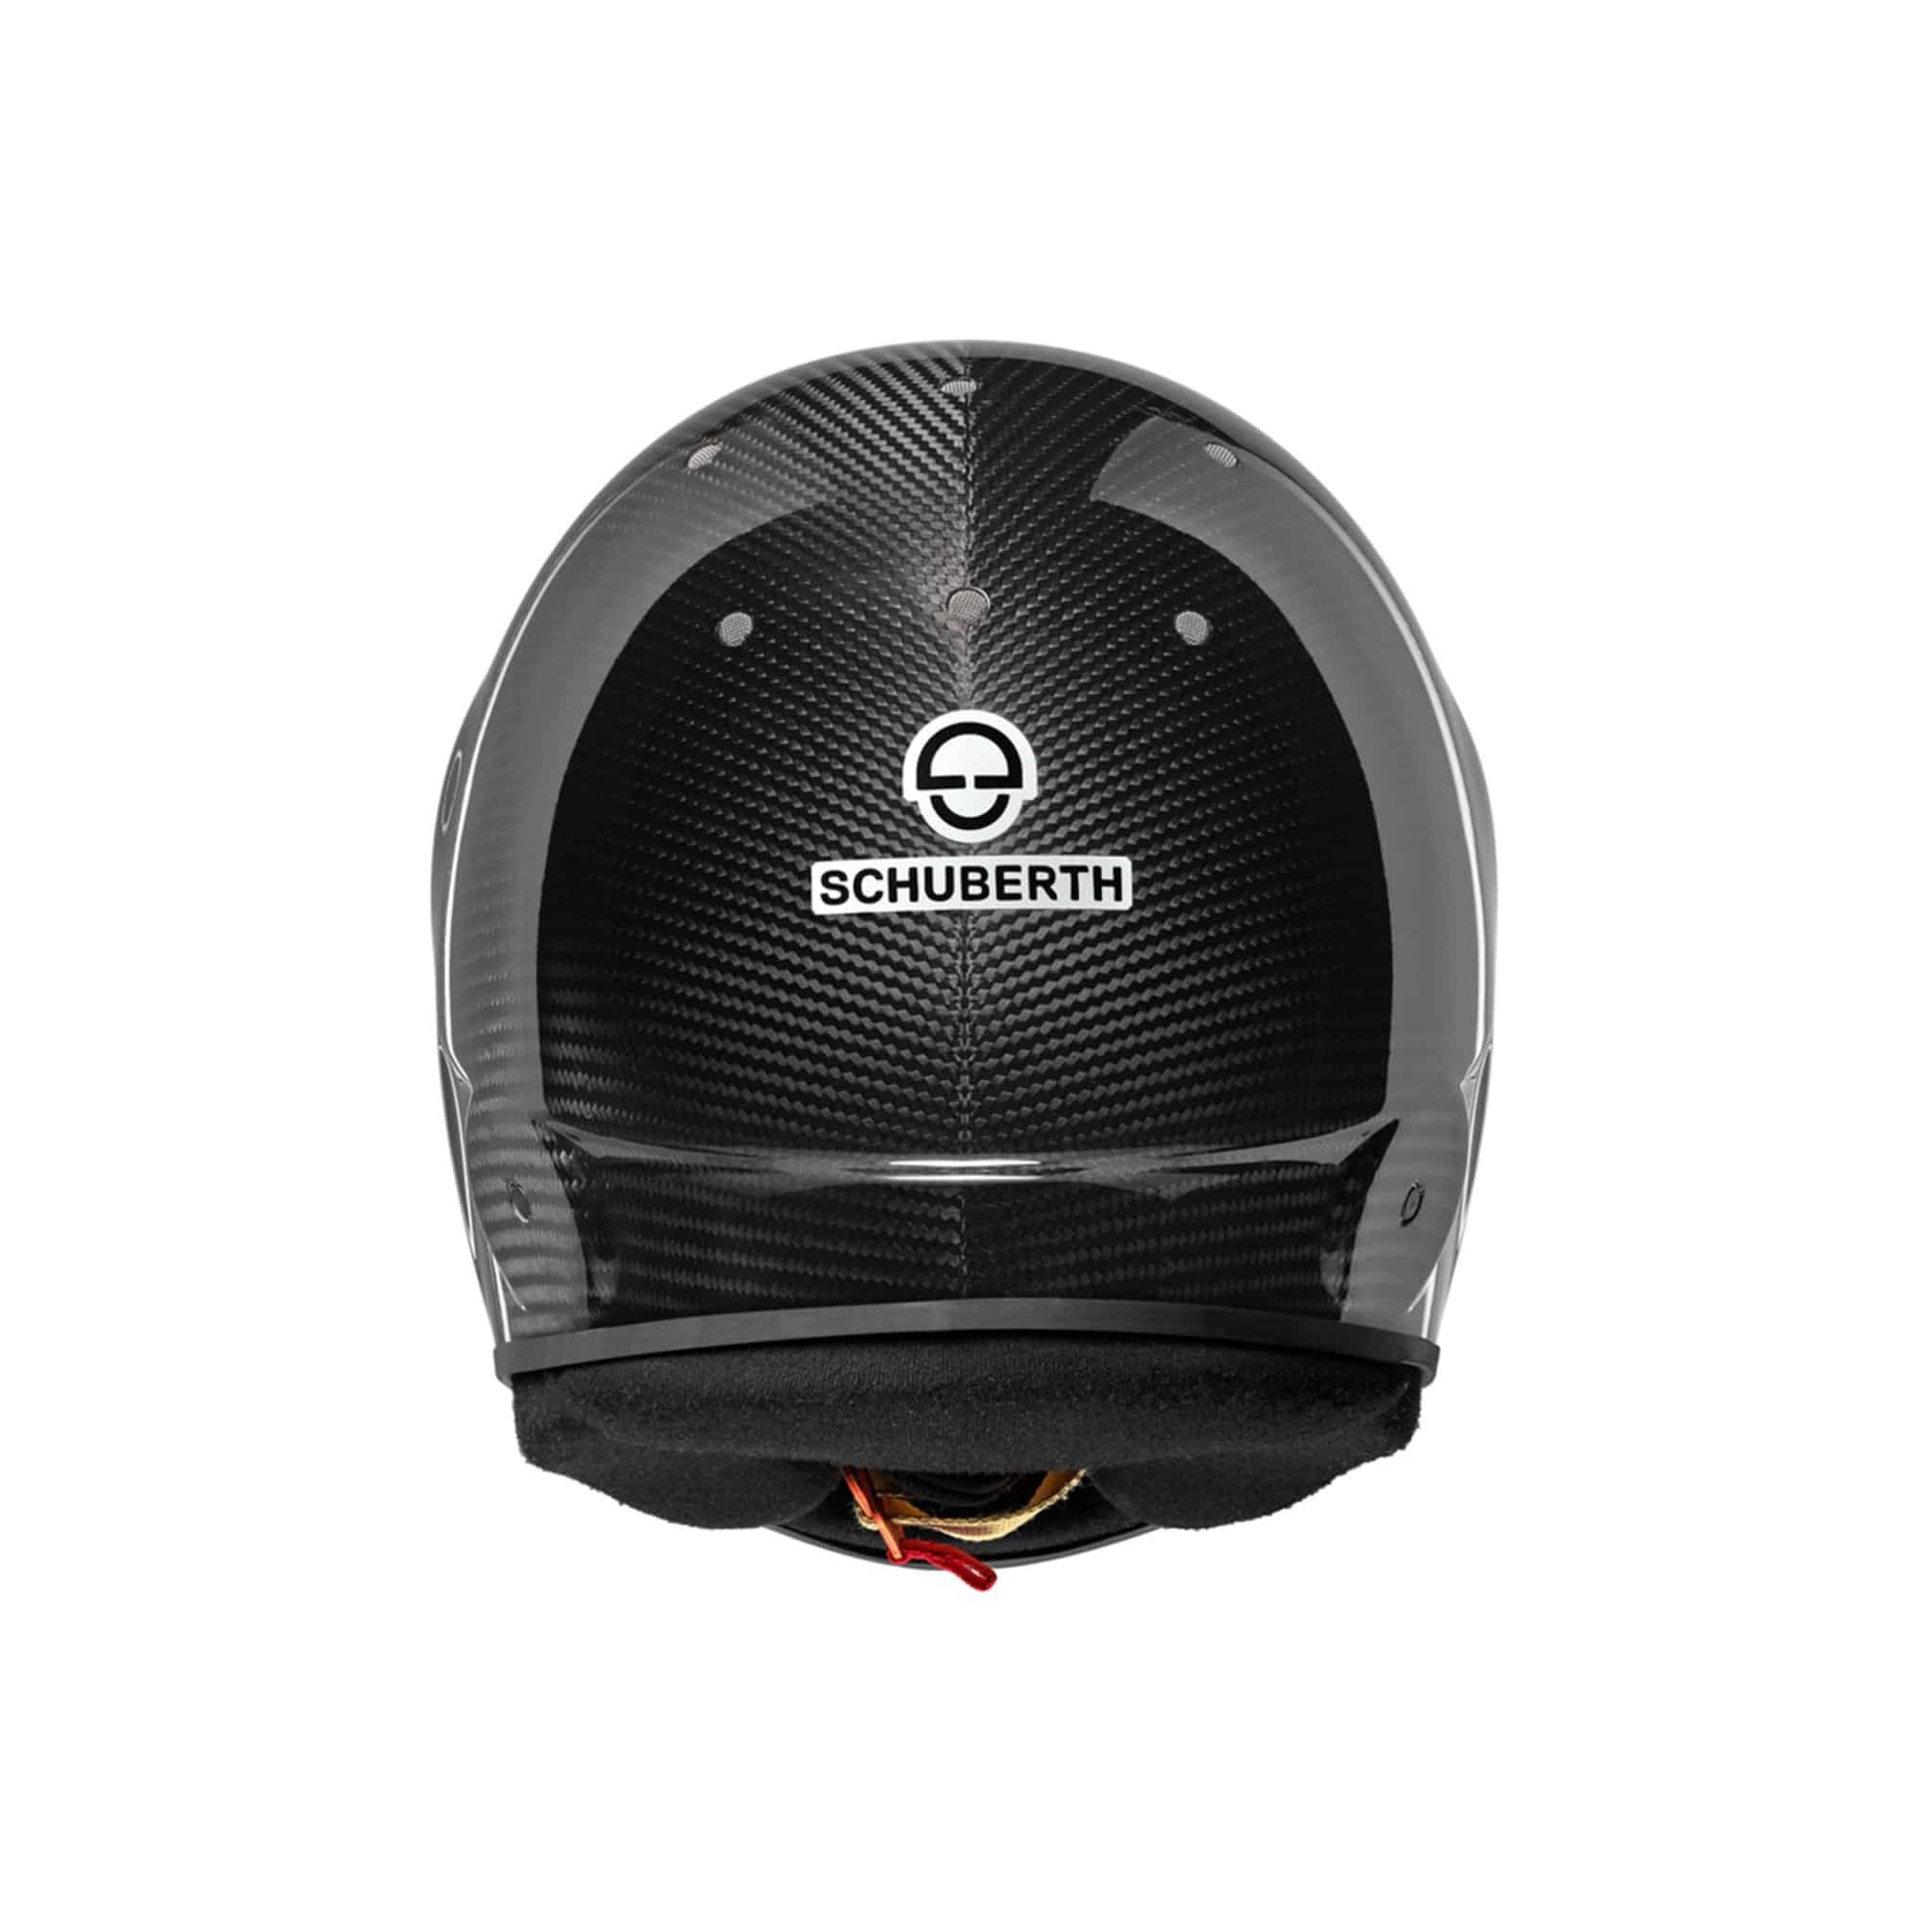 Schuberth Helmet